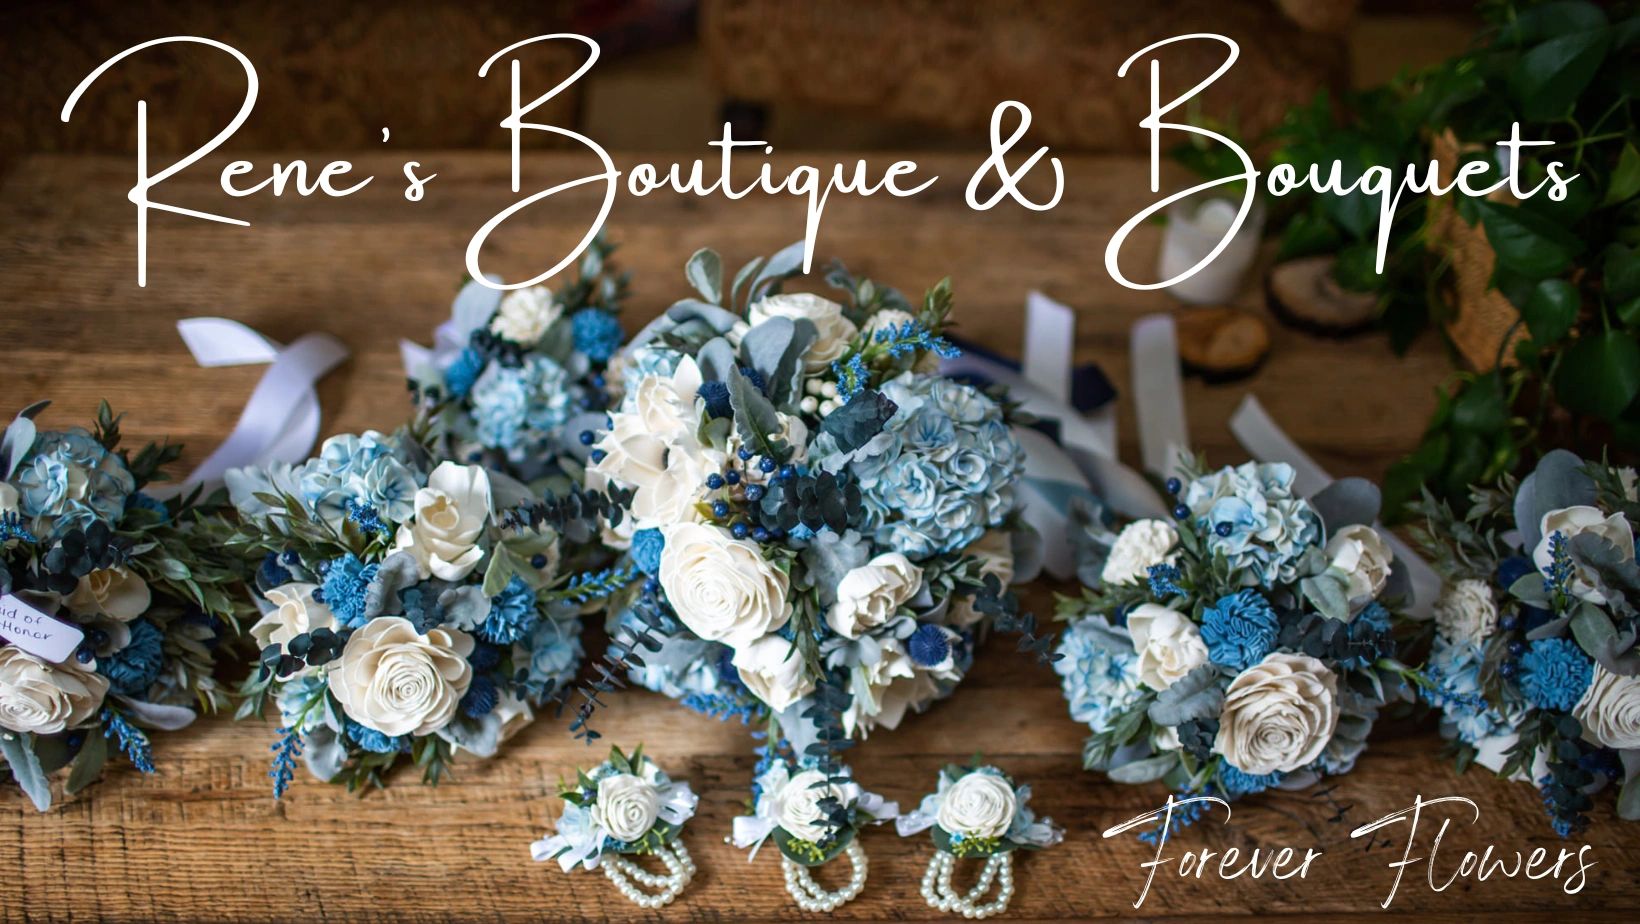 Rene's Boutique & Bouquets